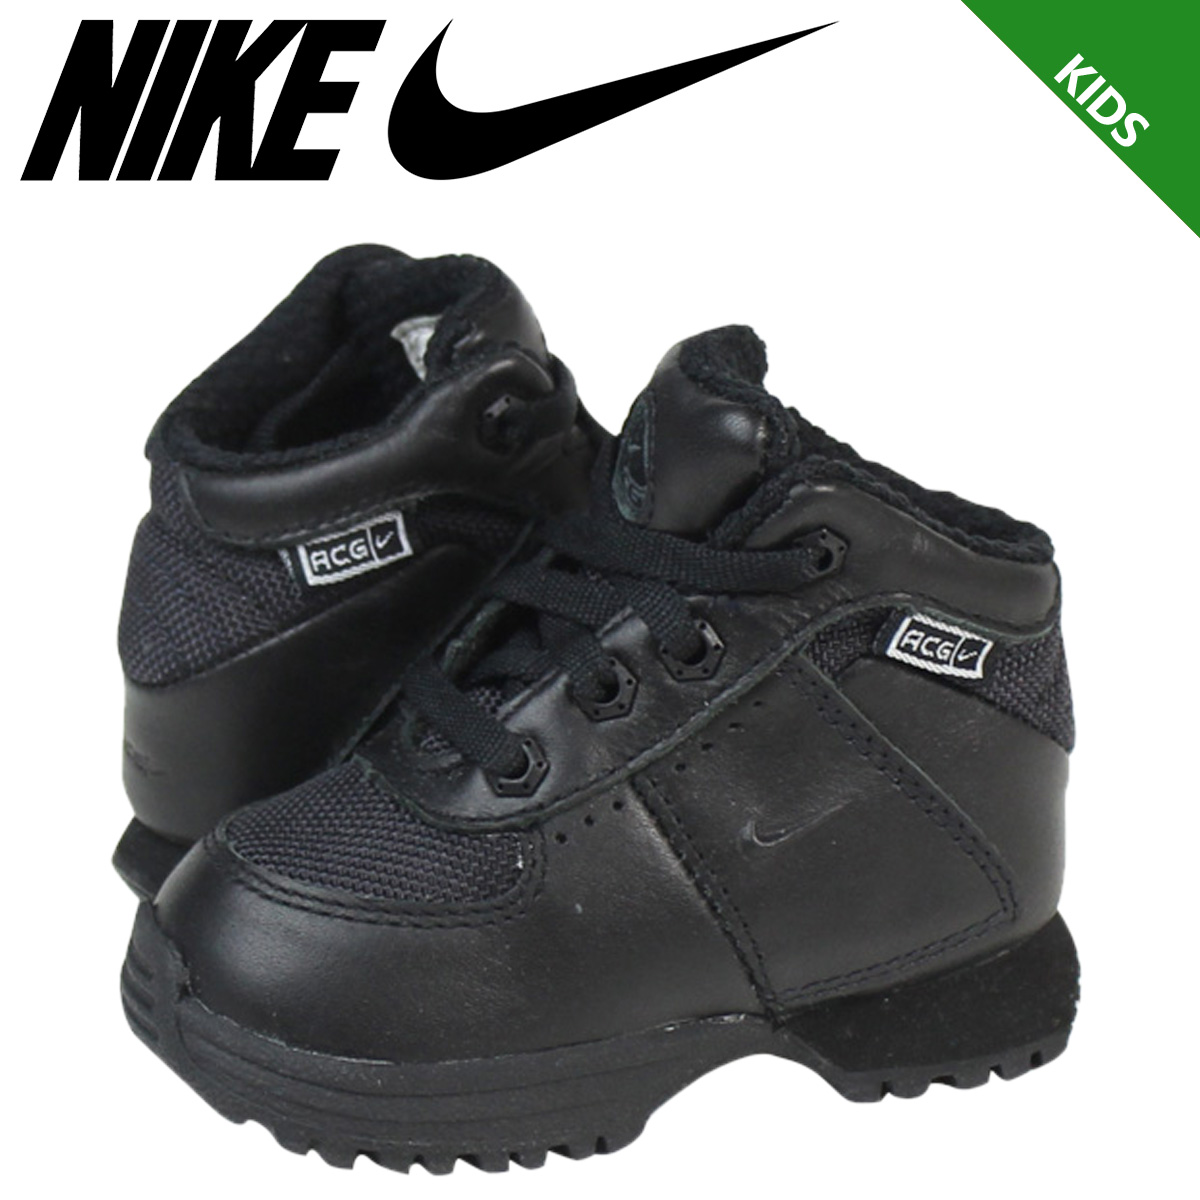 SneaK Online Shop: Nike NIKE sneakers baby kids LITTLE PINCHOT TD 314,598-001 black | Rakuten ...